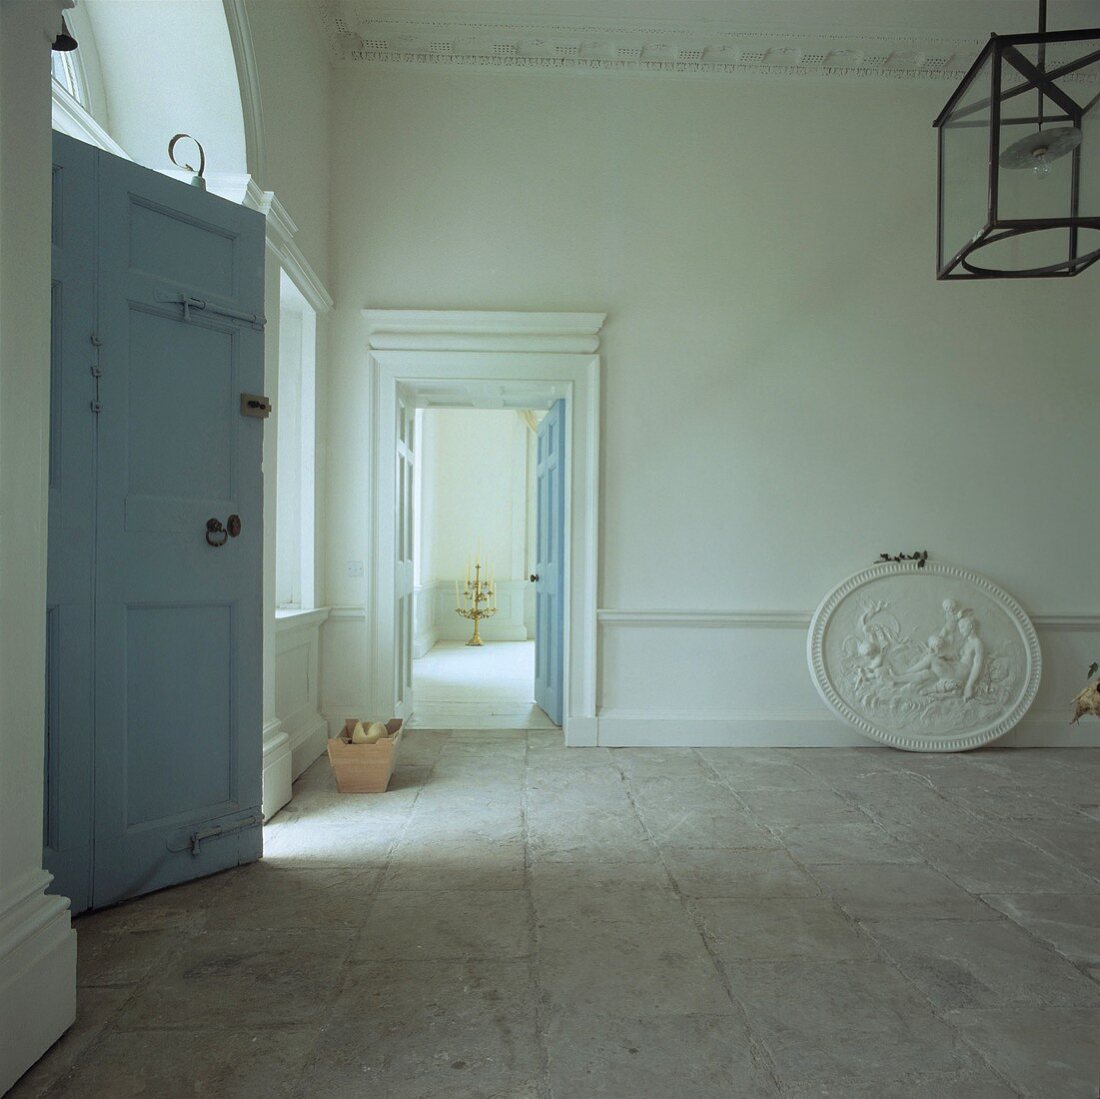 Ovales Gipsrelief auf hellem Natursteinboden in grossem georgianischen Saal mit pastellblauen Türen